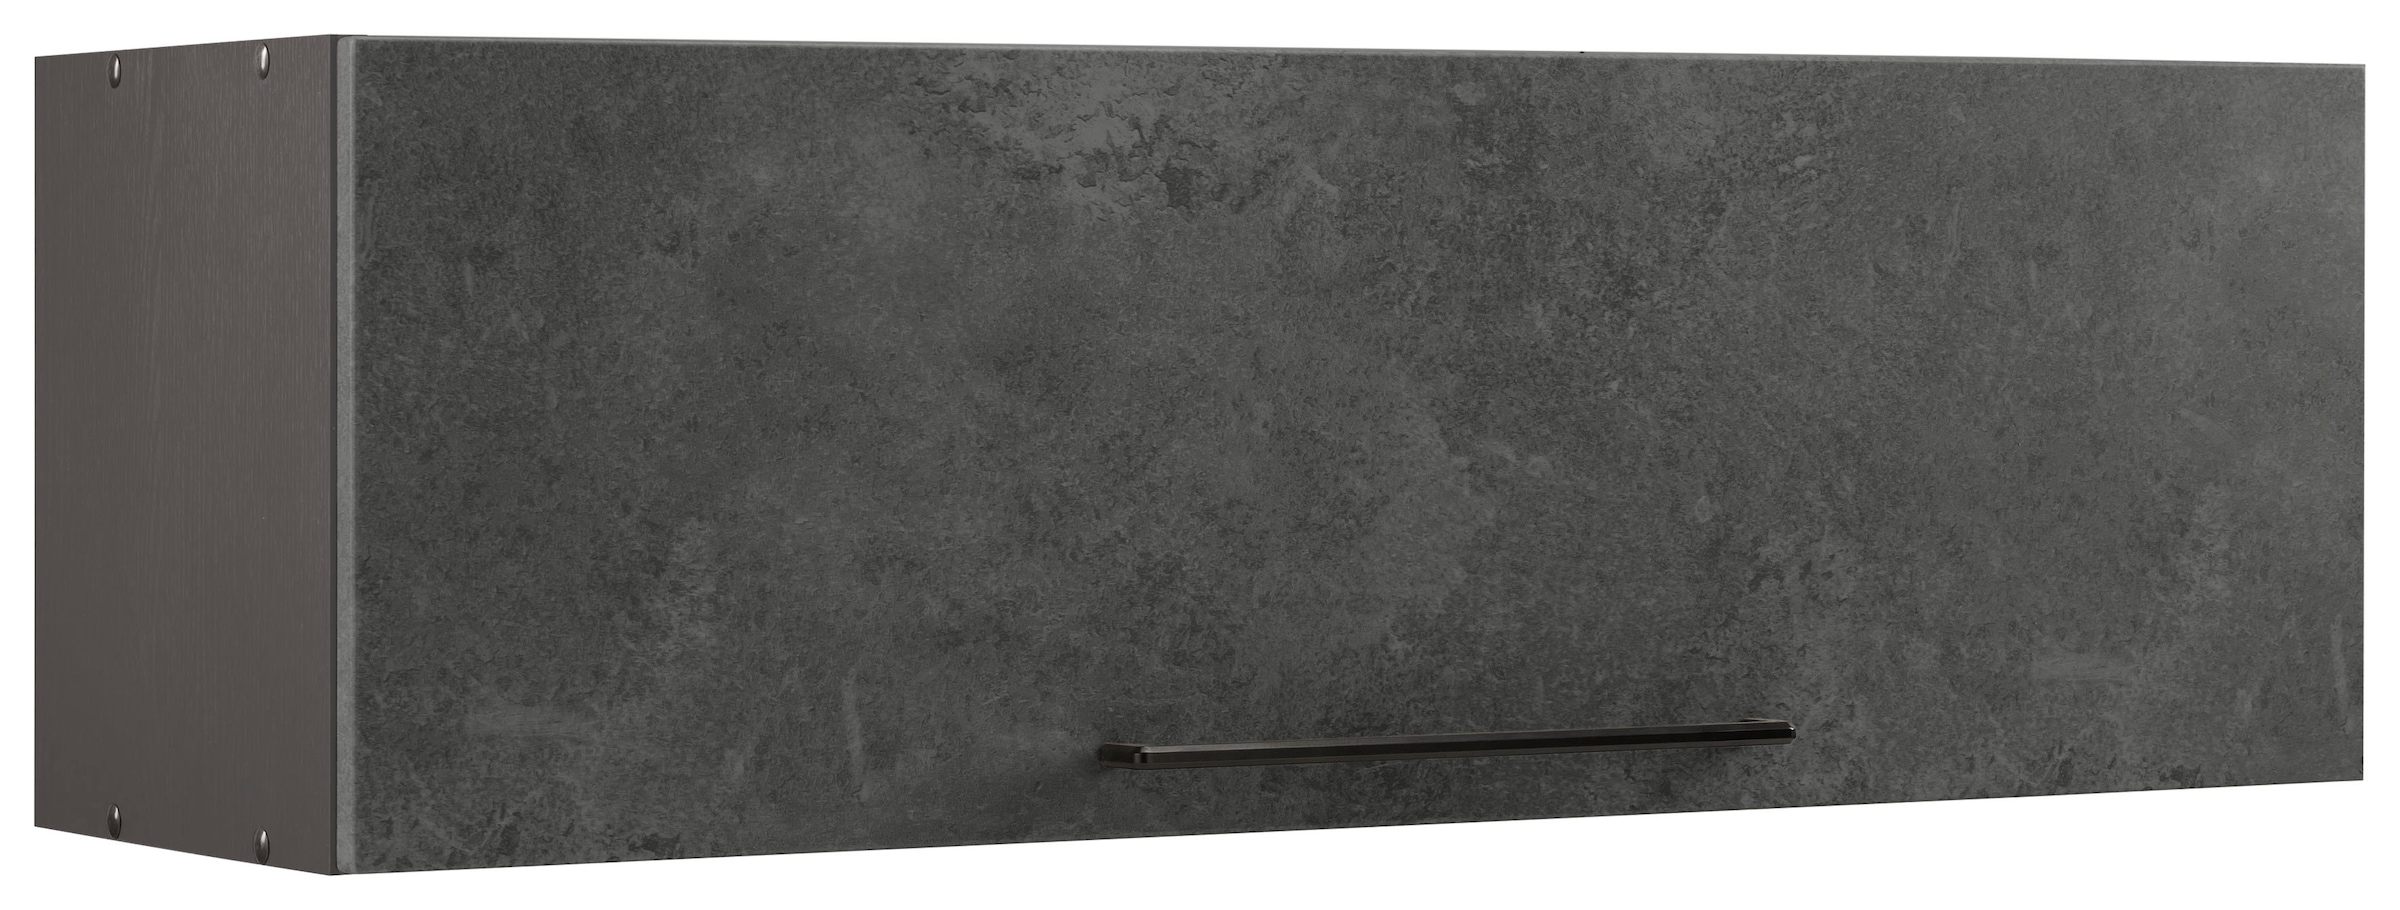 HELD MÖBEL Klapphängeschrank "Tulsa", 100 cm breit, mit 1 Klappe, schwarzer Metallgriff, MDF Front